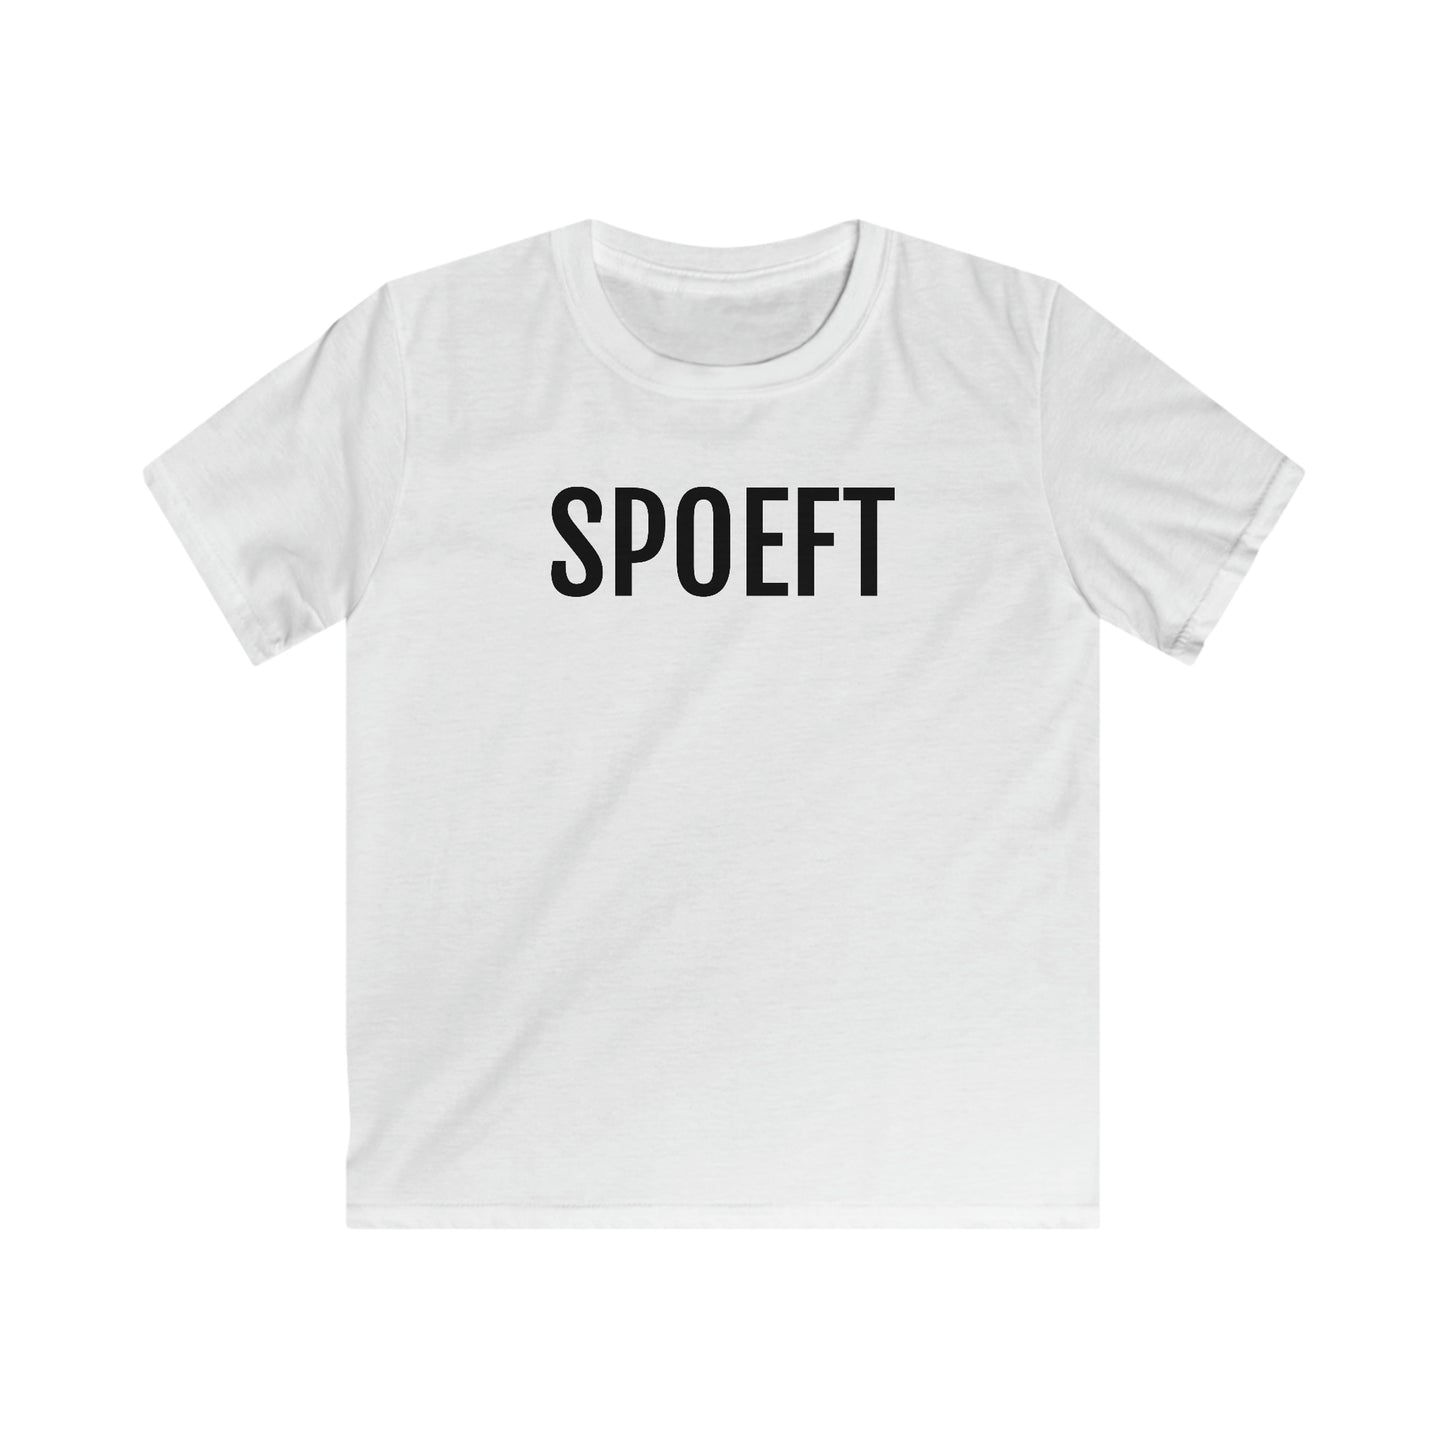 Statement T-shirts in Antwerps: SPOEFT Unisex Stijl